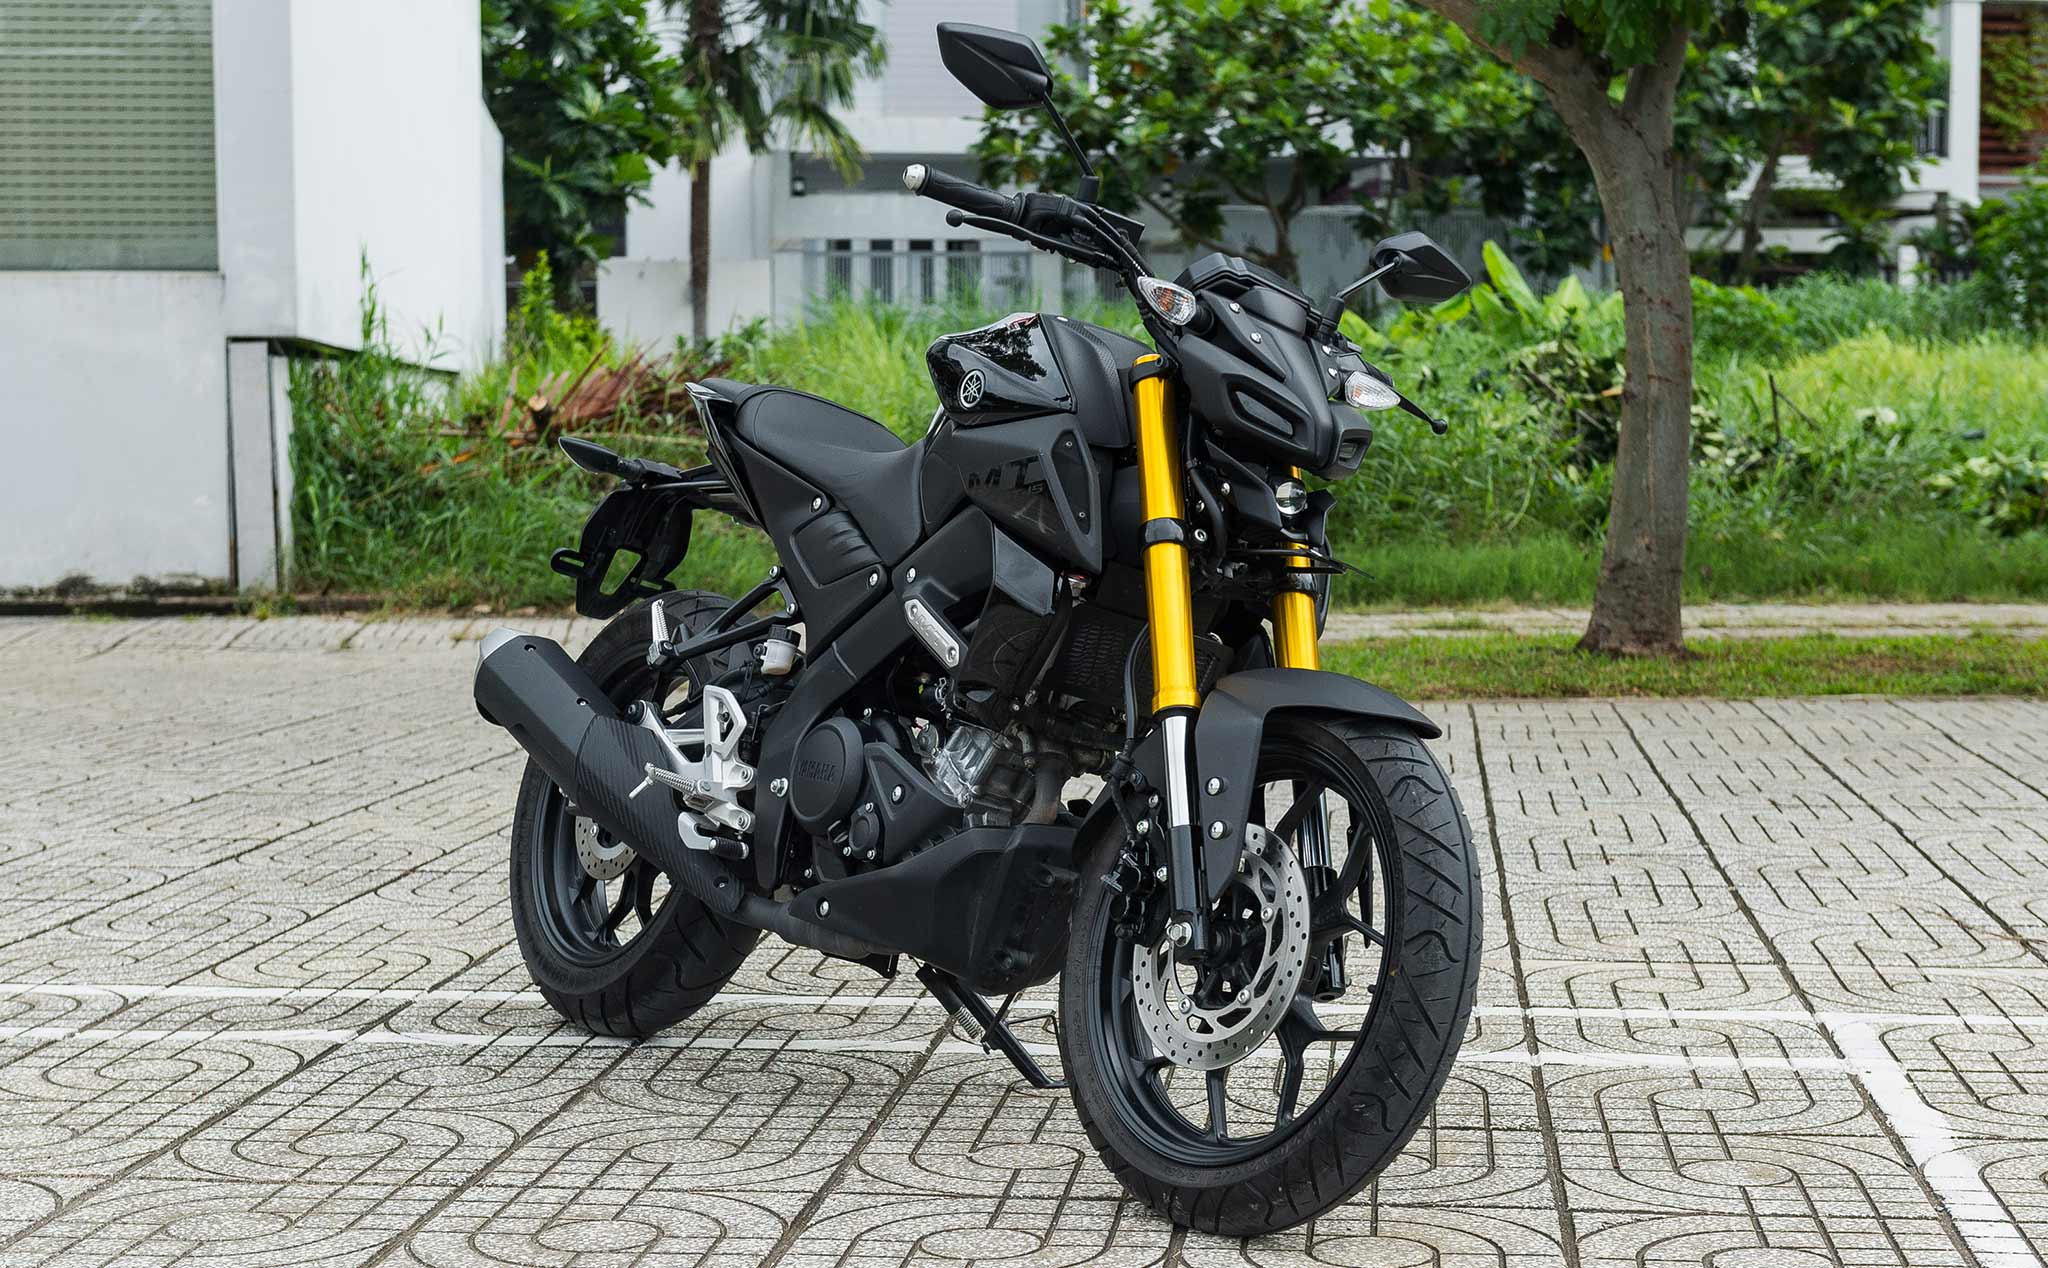 Yamaha MT-15 bán chính hãng tại Việt Nam, giá 78 triệu | Viết bởi Tuannph